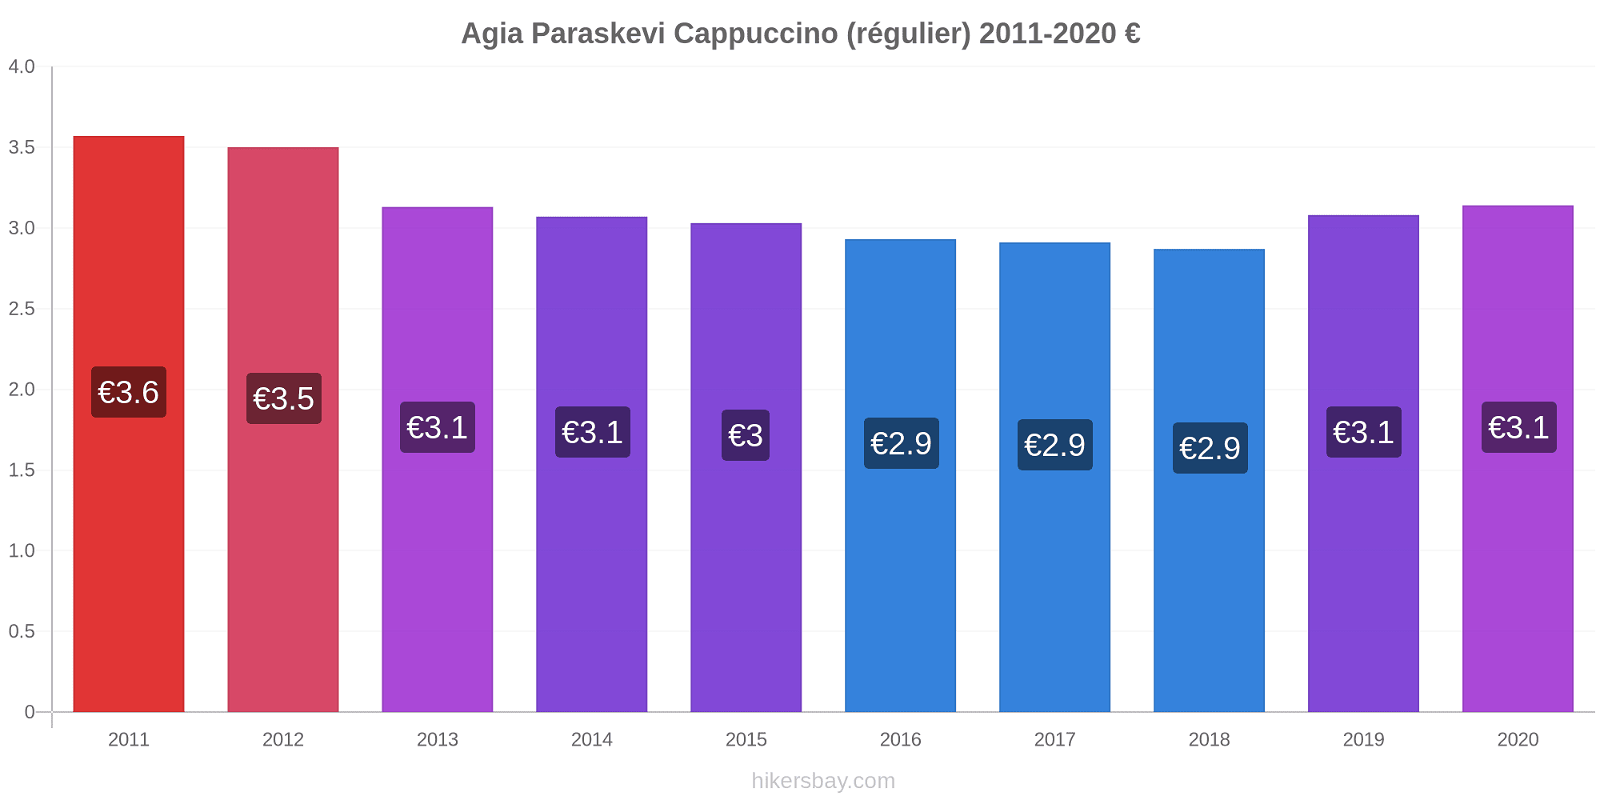 Agia Paraskevi changements de prix Cappuccino (régulier) hikersbay.com